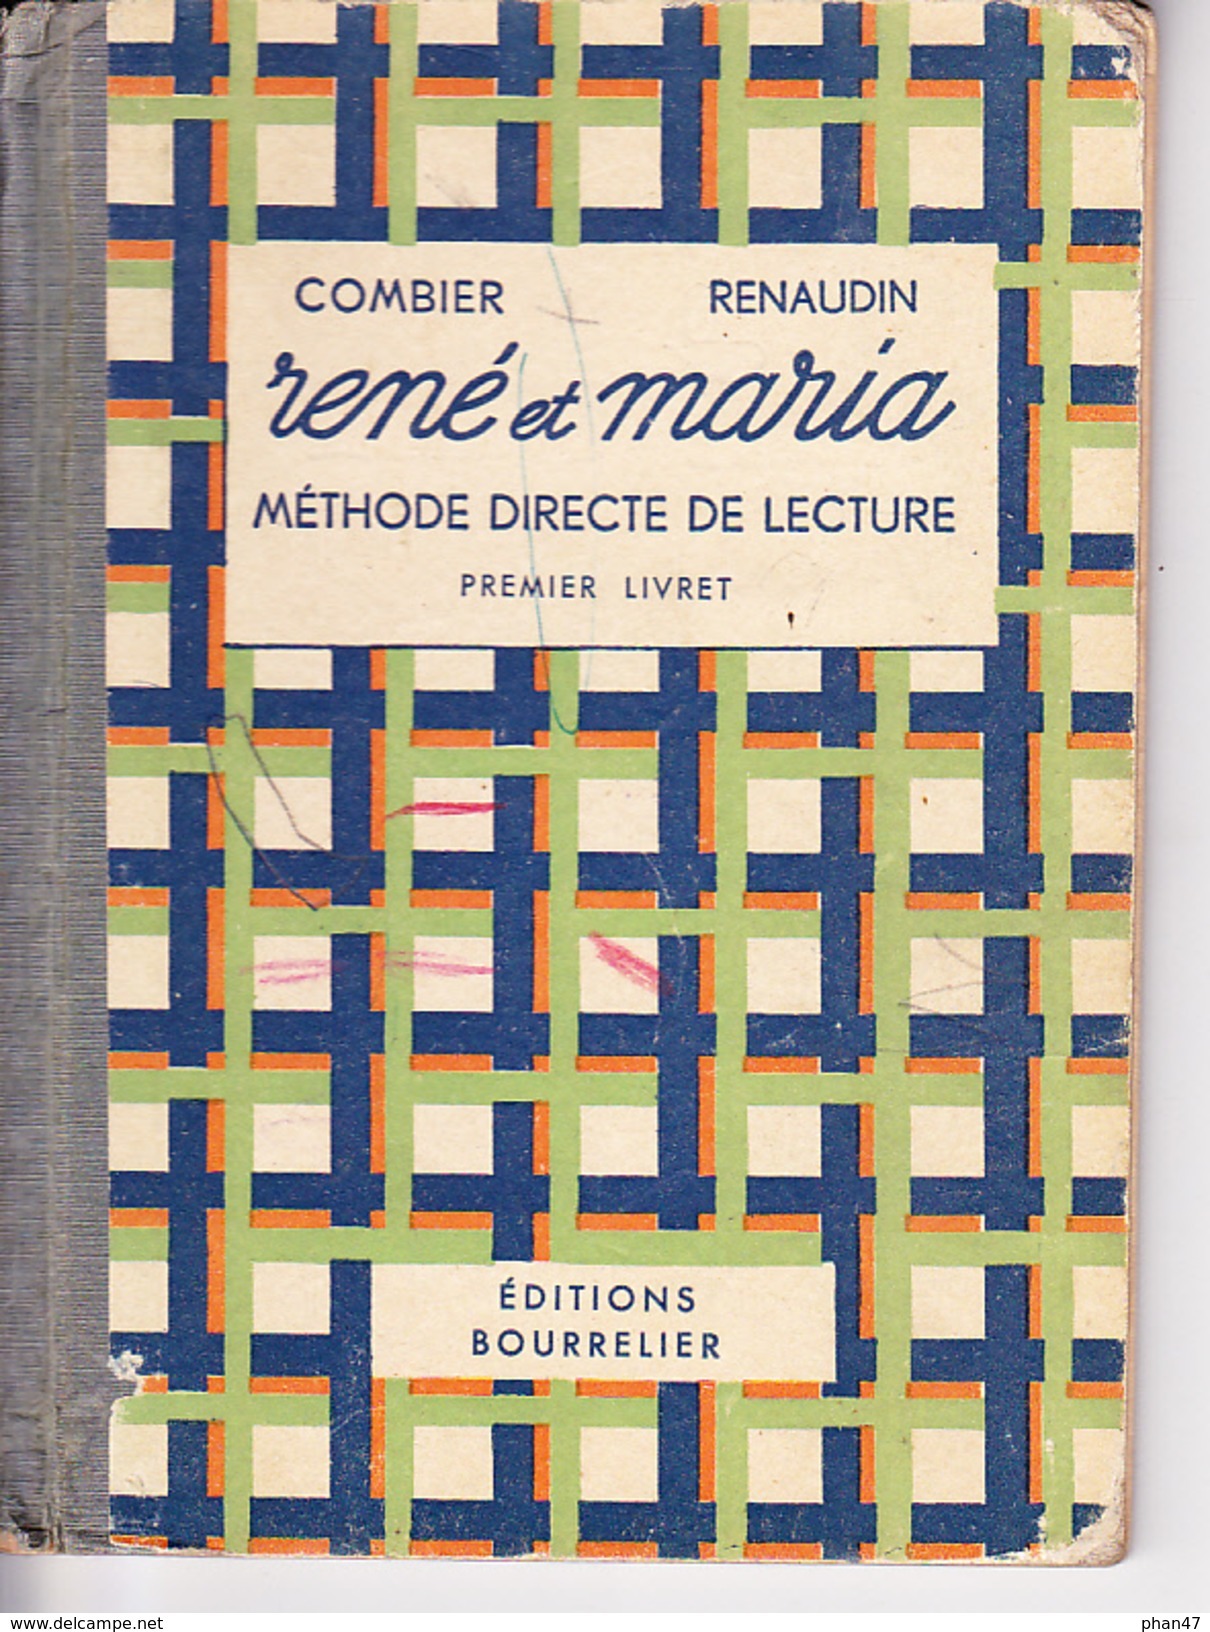 RENE ET MARIA Méthode Directe De Lecture Par J. COMBIER Et Mme H. FENAUDIN, Ed BOURRELIER 1960 Environ - 0-6 Ans